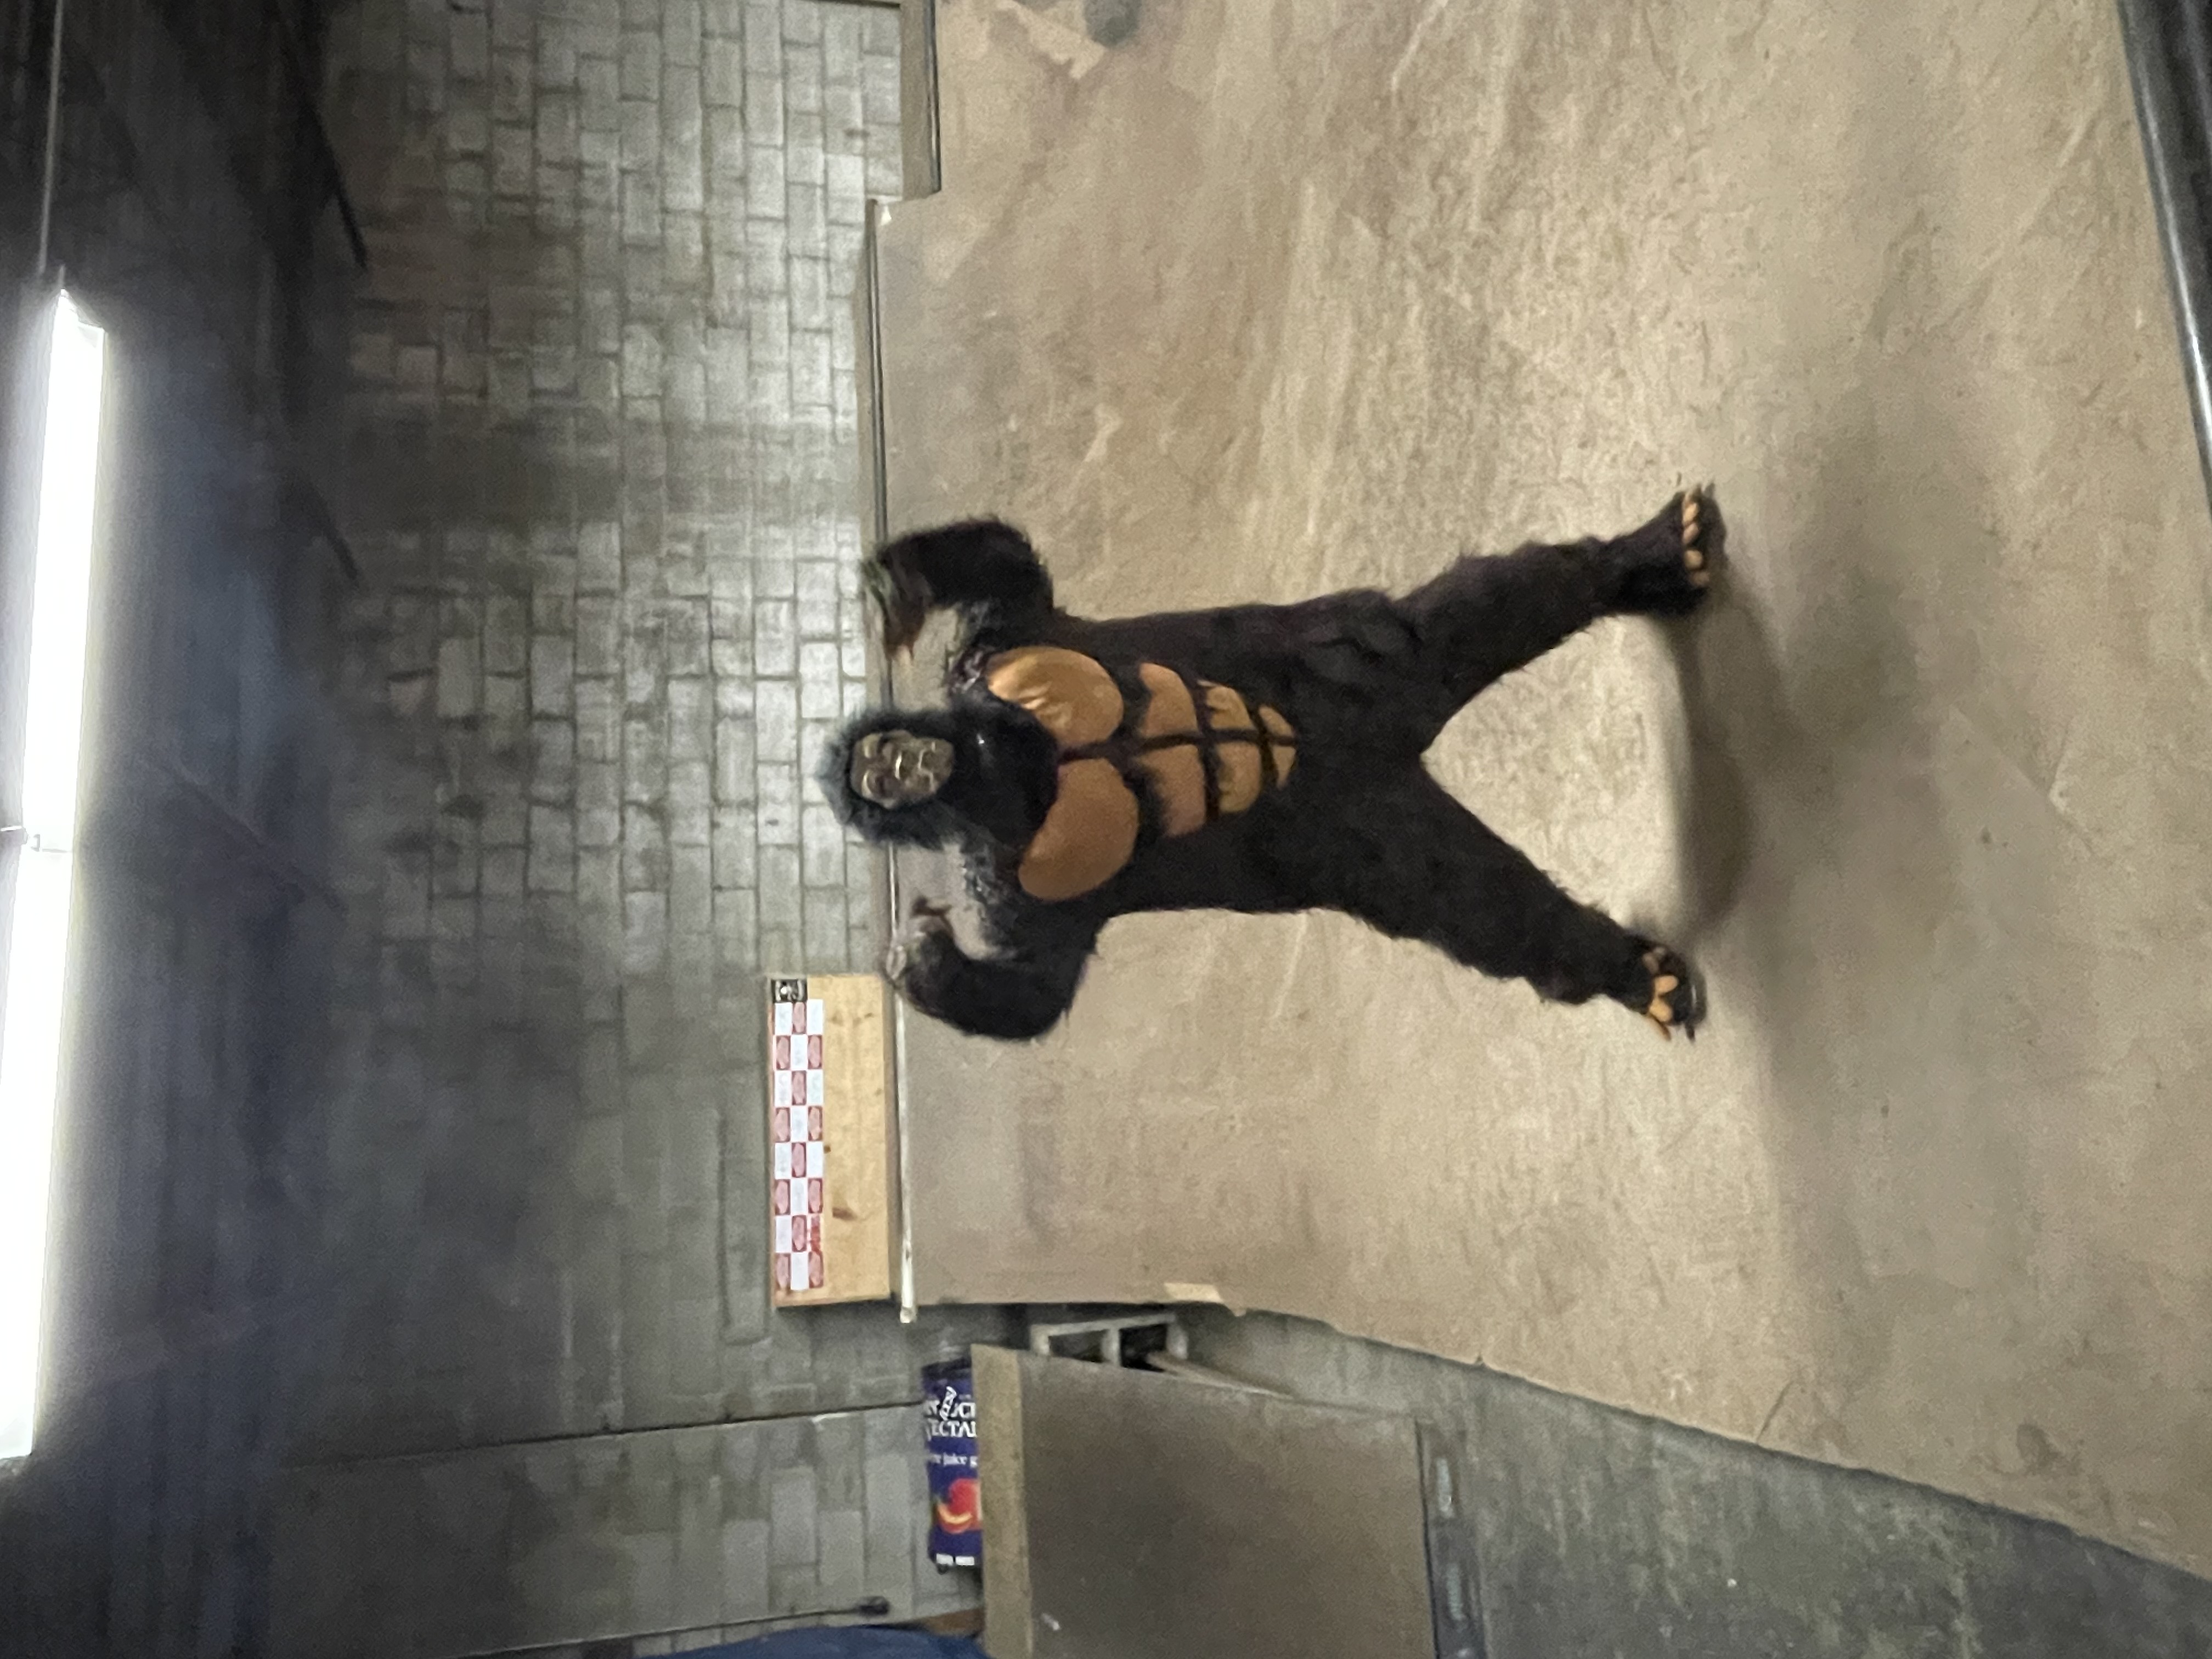 Gorilla at Skate Ramp